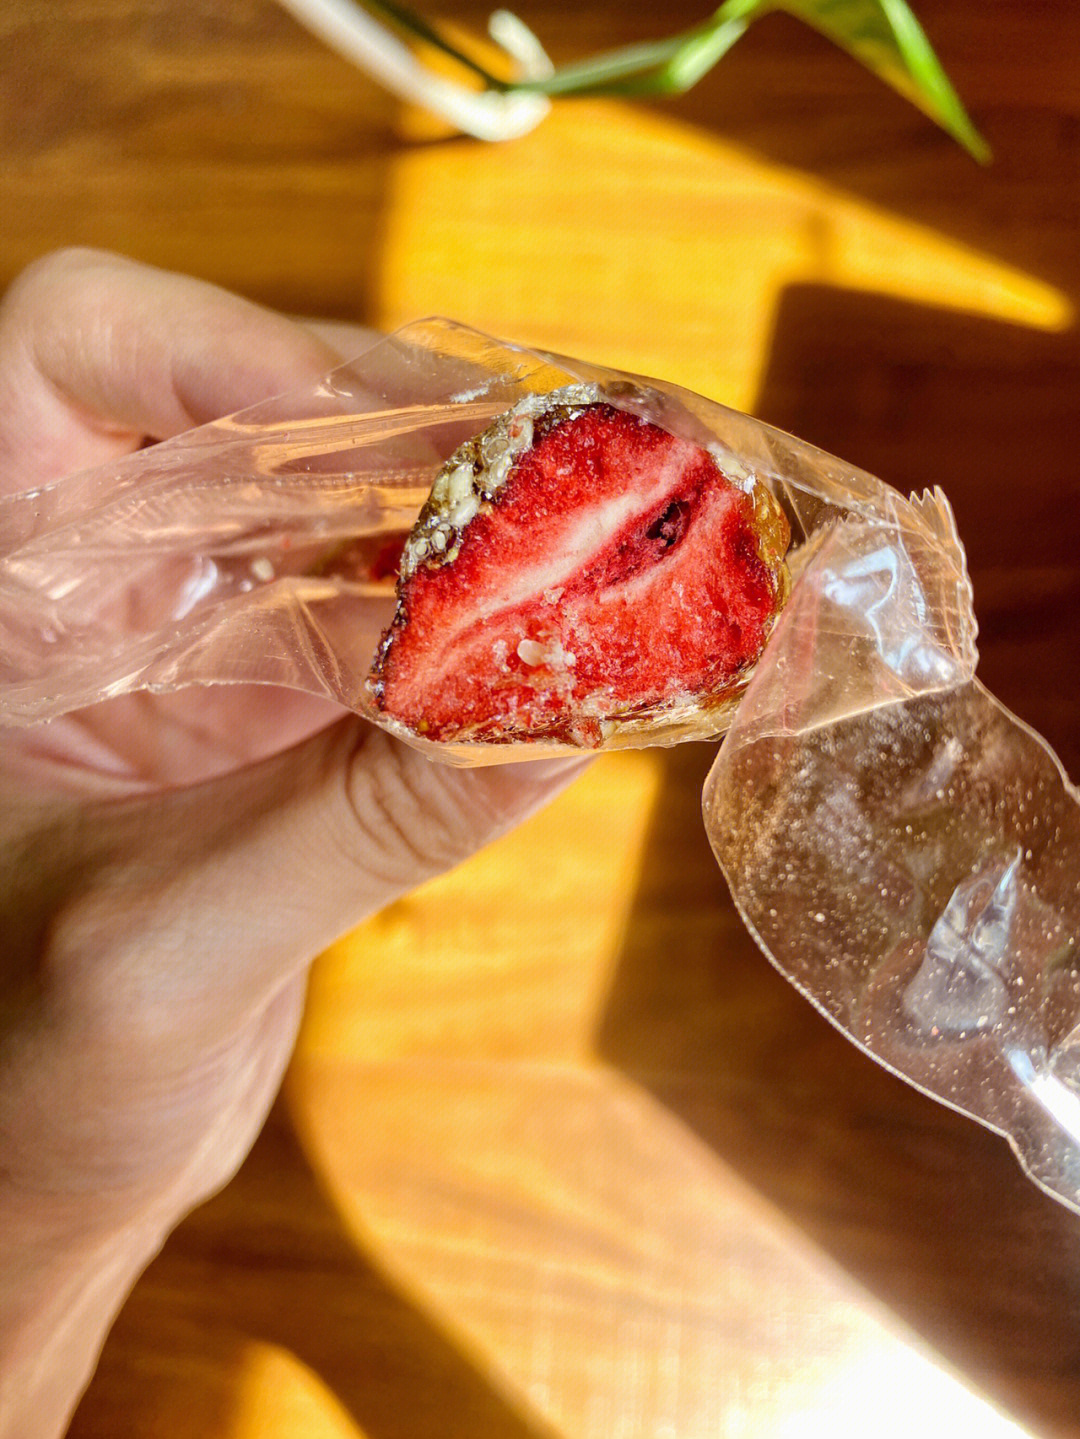 里边是超级完整的一颗草莓外面裹着一层冰糖还有芝麻咬下去嘎嘣脆 又